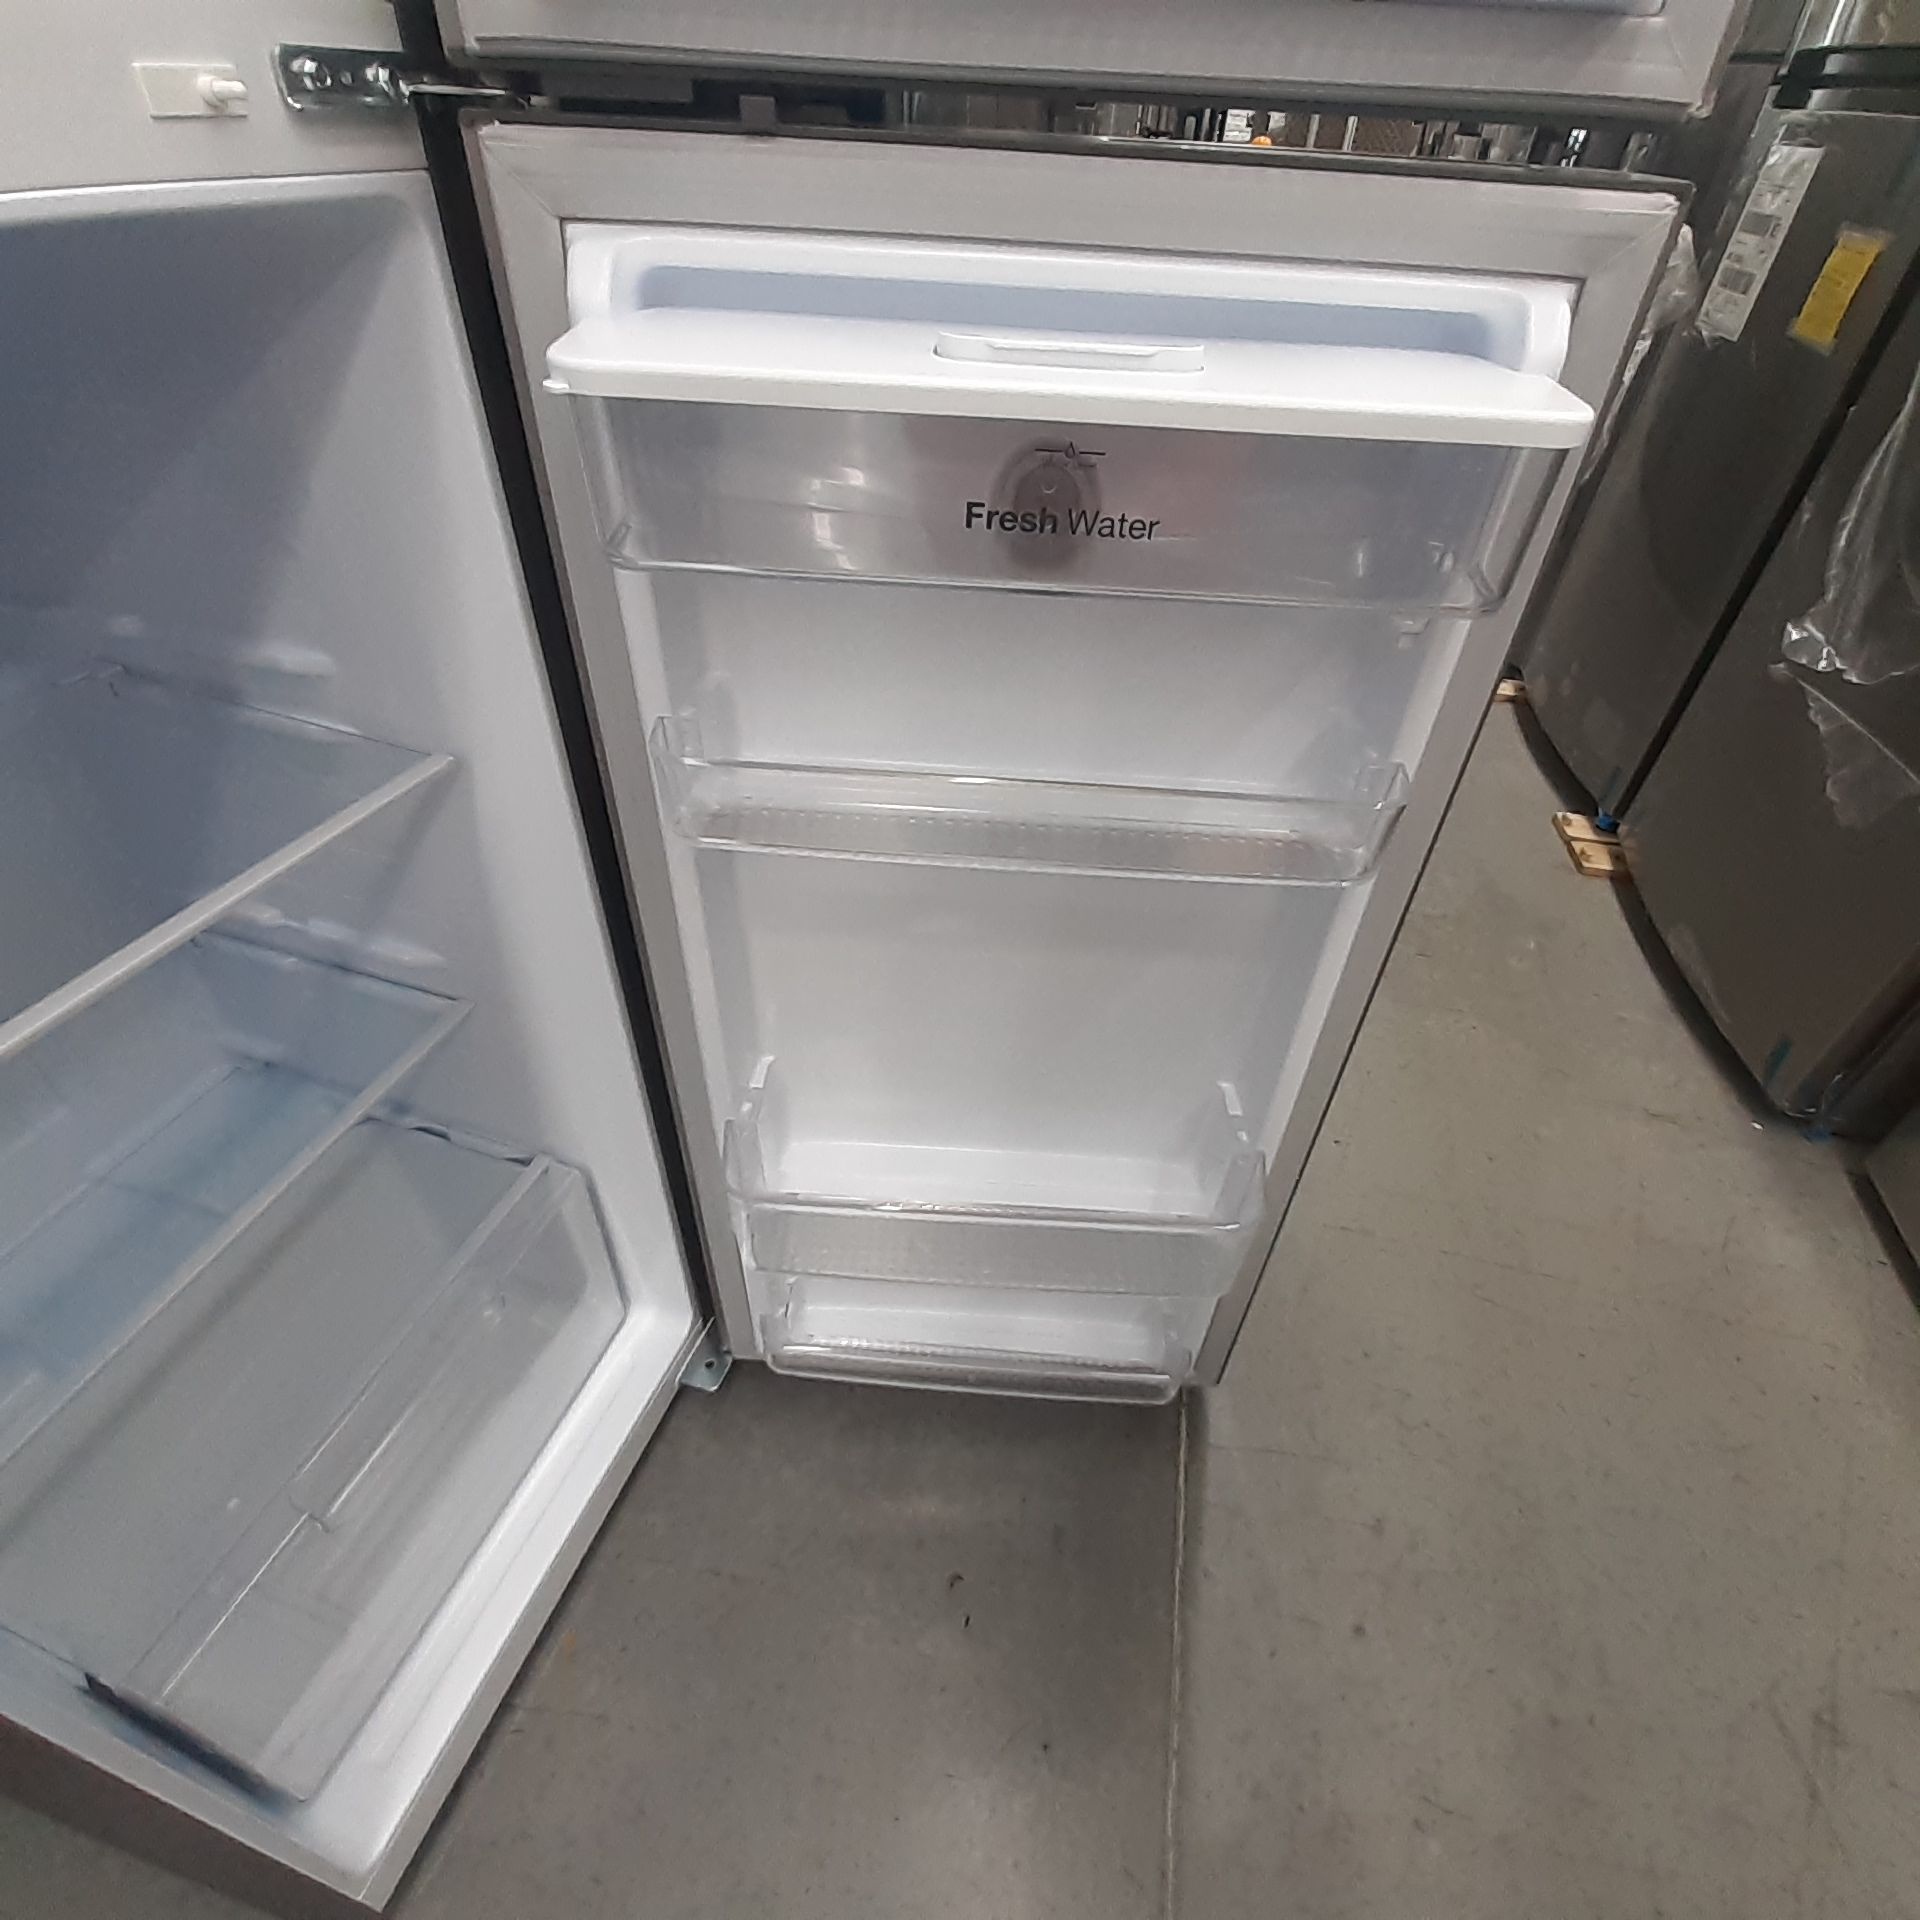 Lote De 2 Refrigeradores: 1 Refrigerador Marca Mabe, 1 Refrigerador Marca Winia, Distintos Modelos - Image 17 of 23